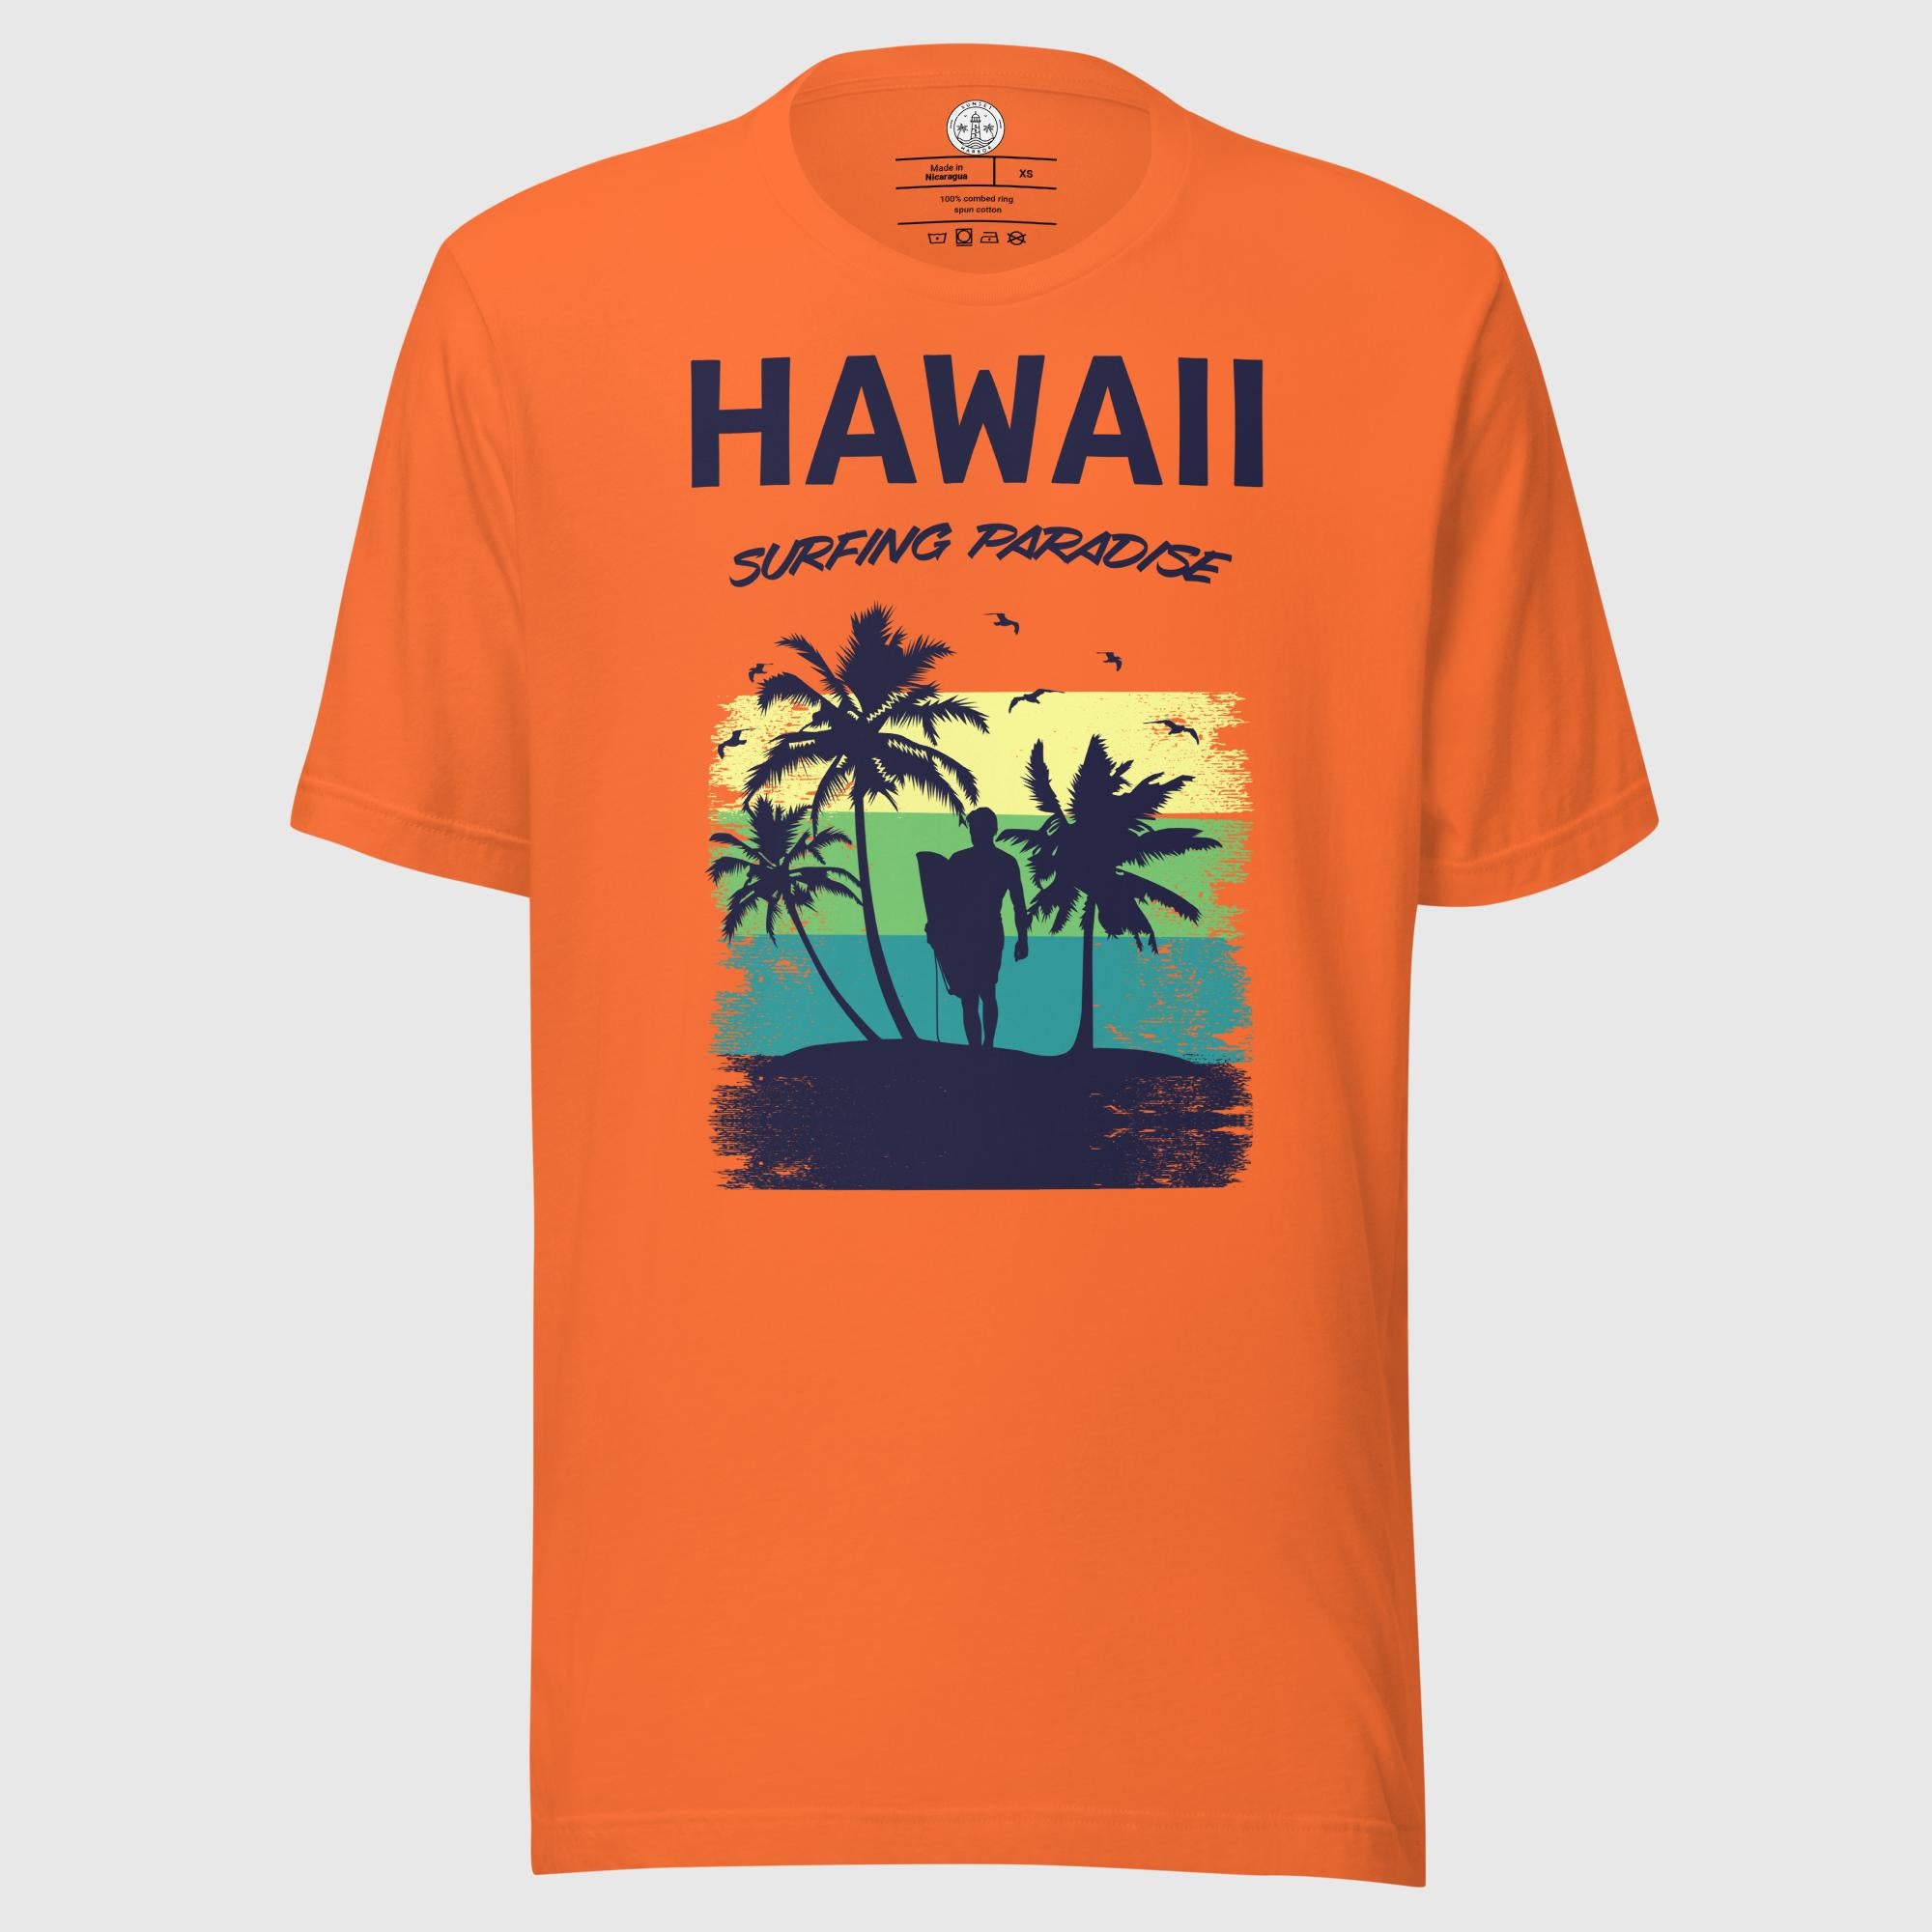 Camiseta unisex - Hawai